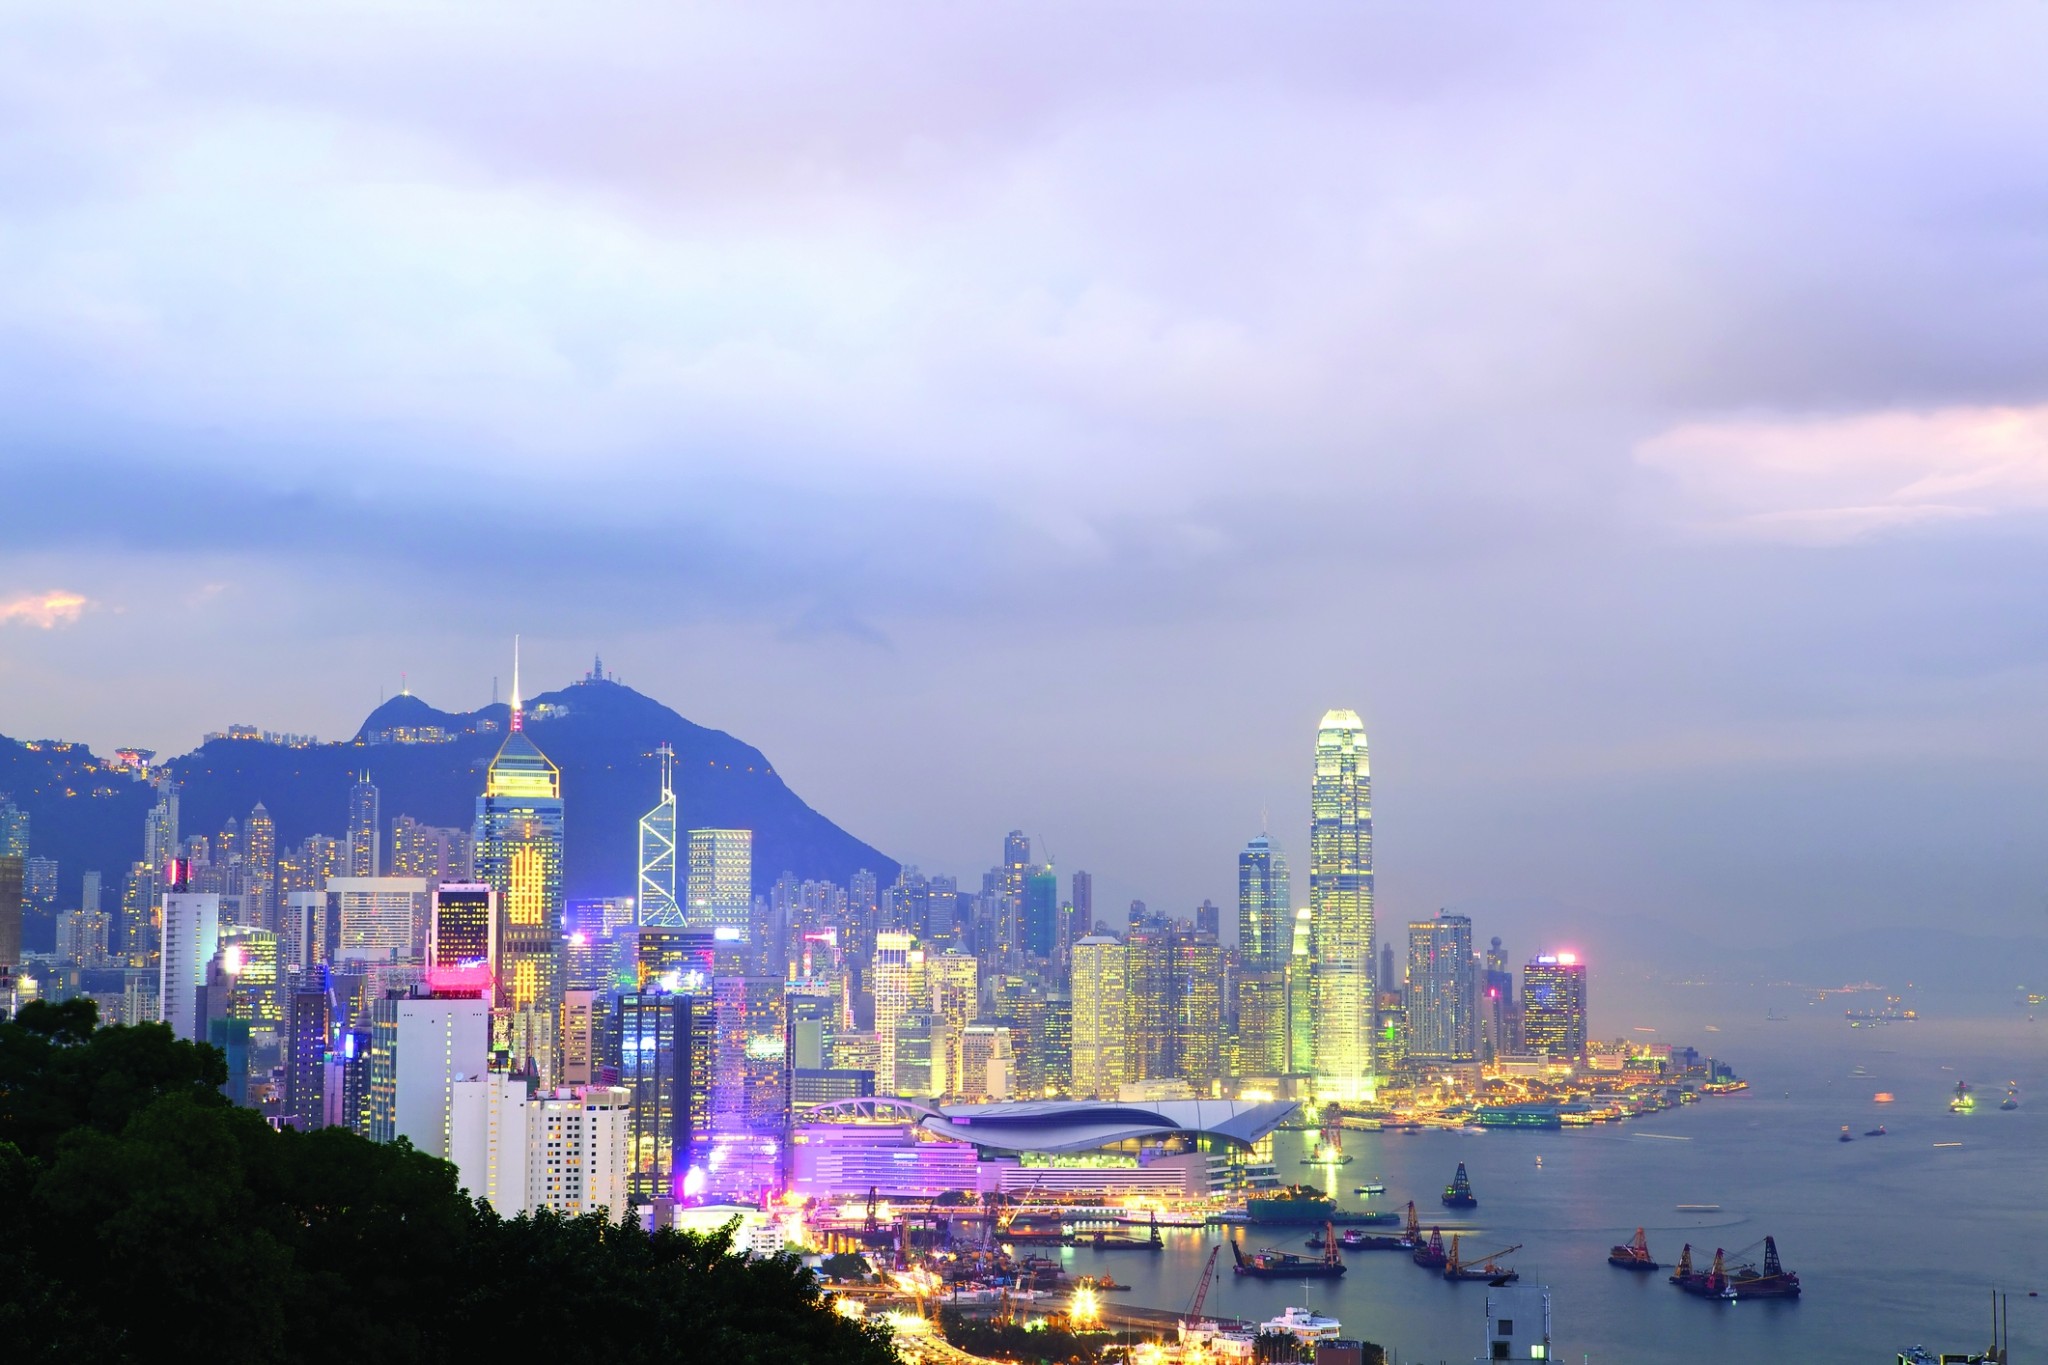 ICBC Financial Leasing sets up Hong Kong subsidiary